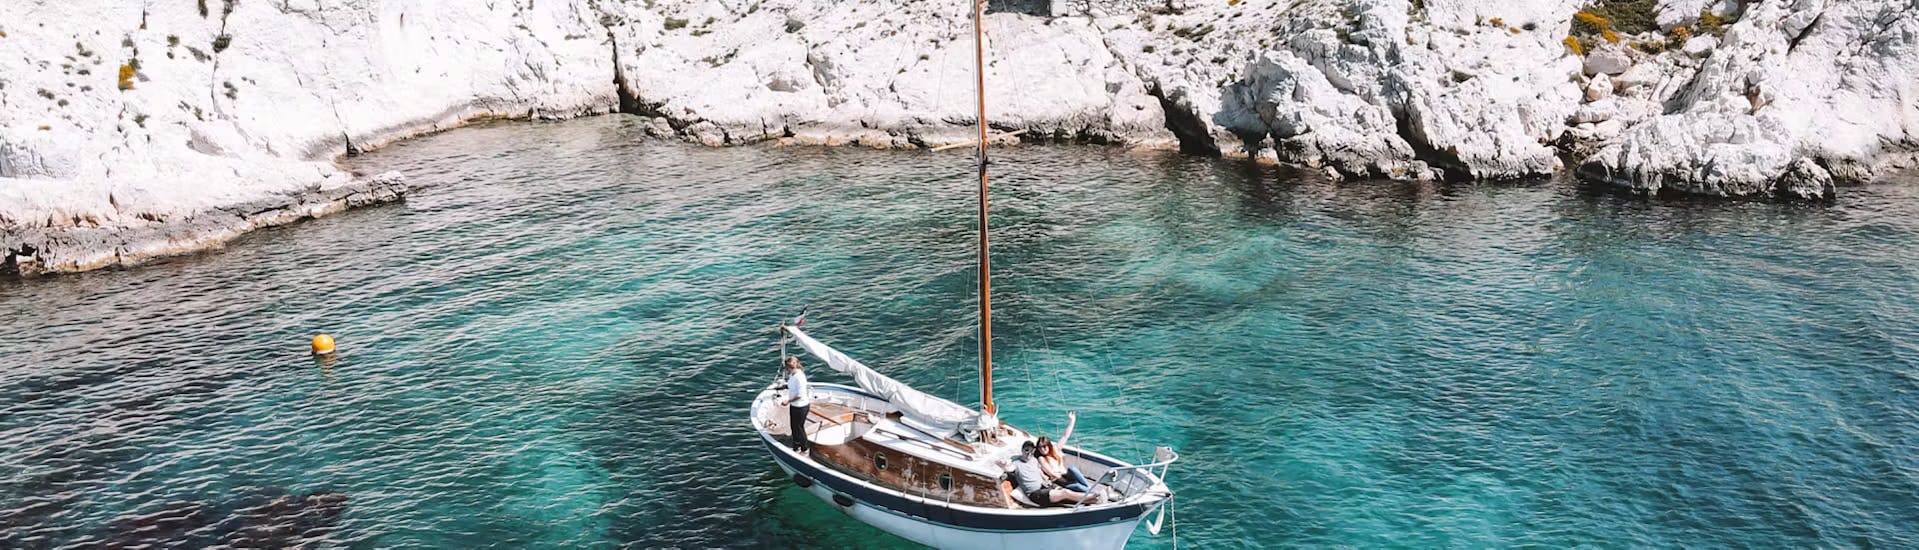 Gita privata in barca intorno a Marsiglia con Capitaine Coco Marseille.